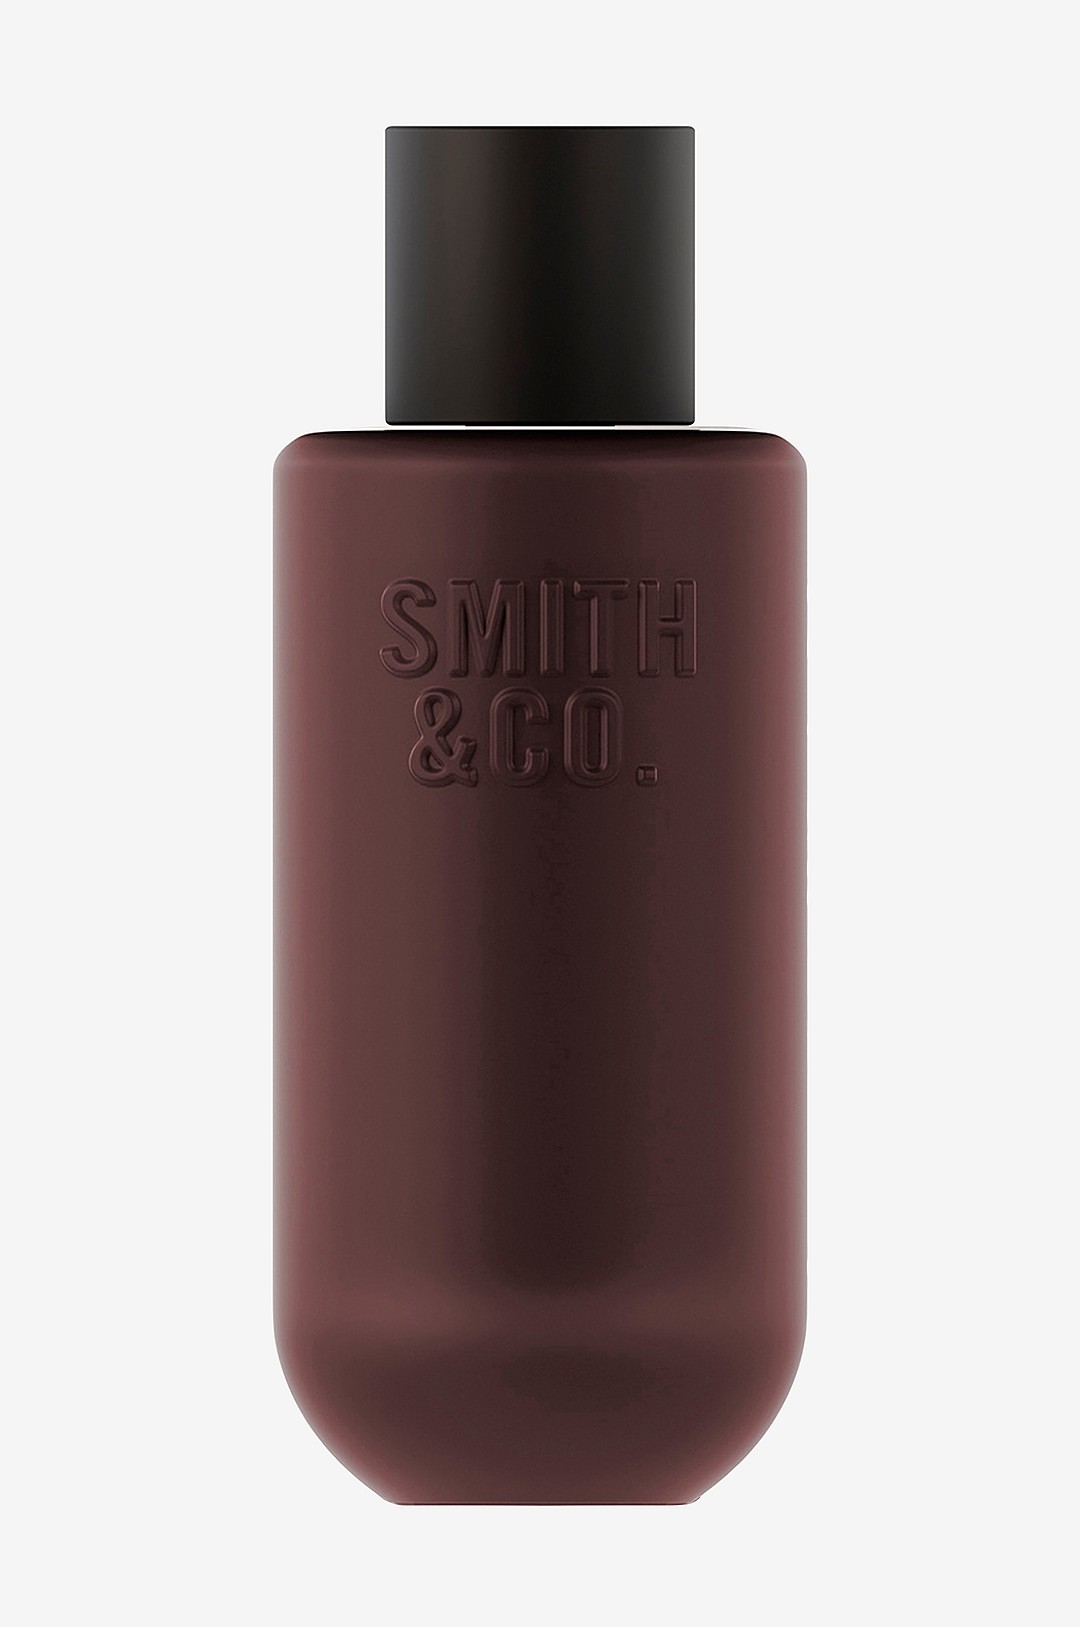 Smith & Co. - Black Oud & Saffron Room Spray 100 ml